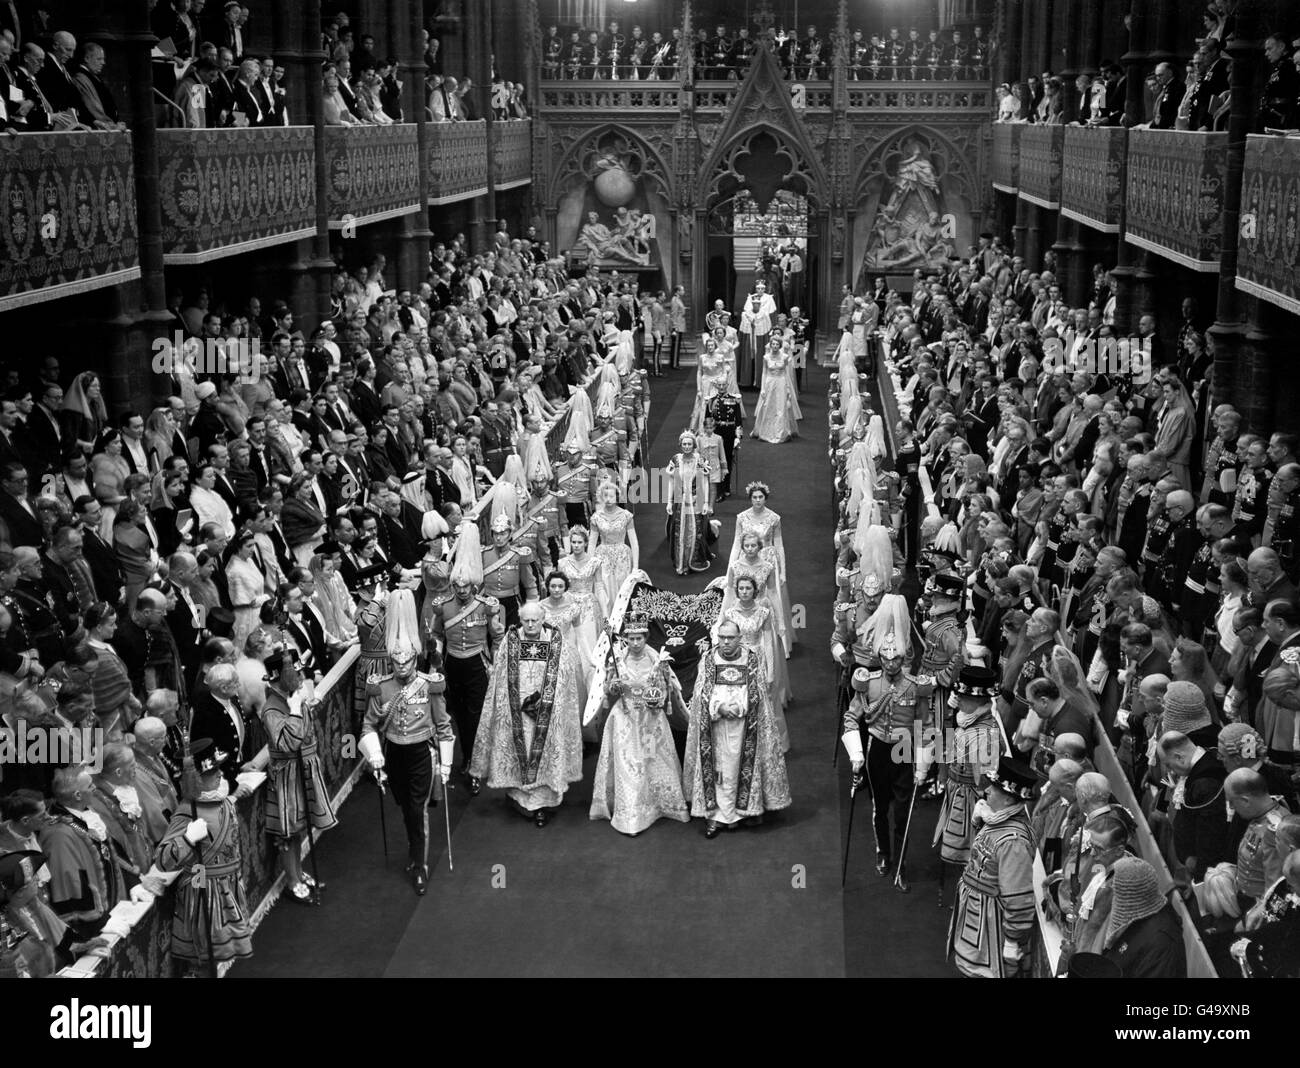 Royalty - incoronazione della Regina Elisabetta II - Londra Foto Stock